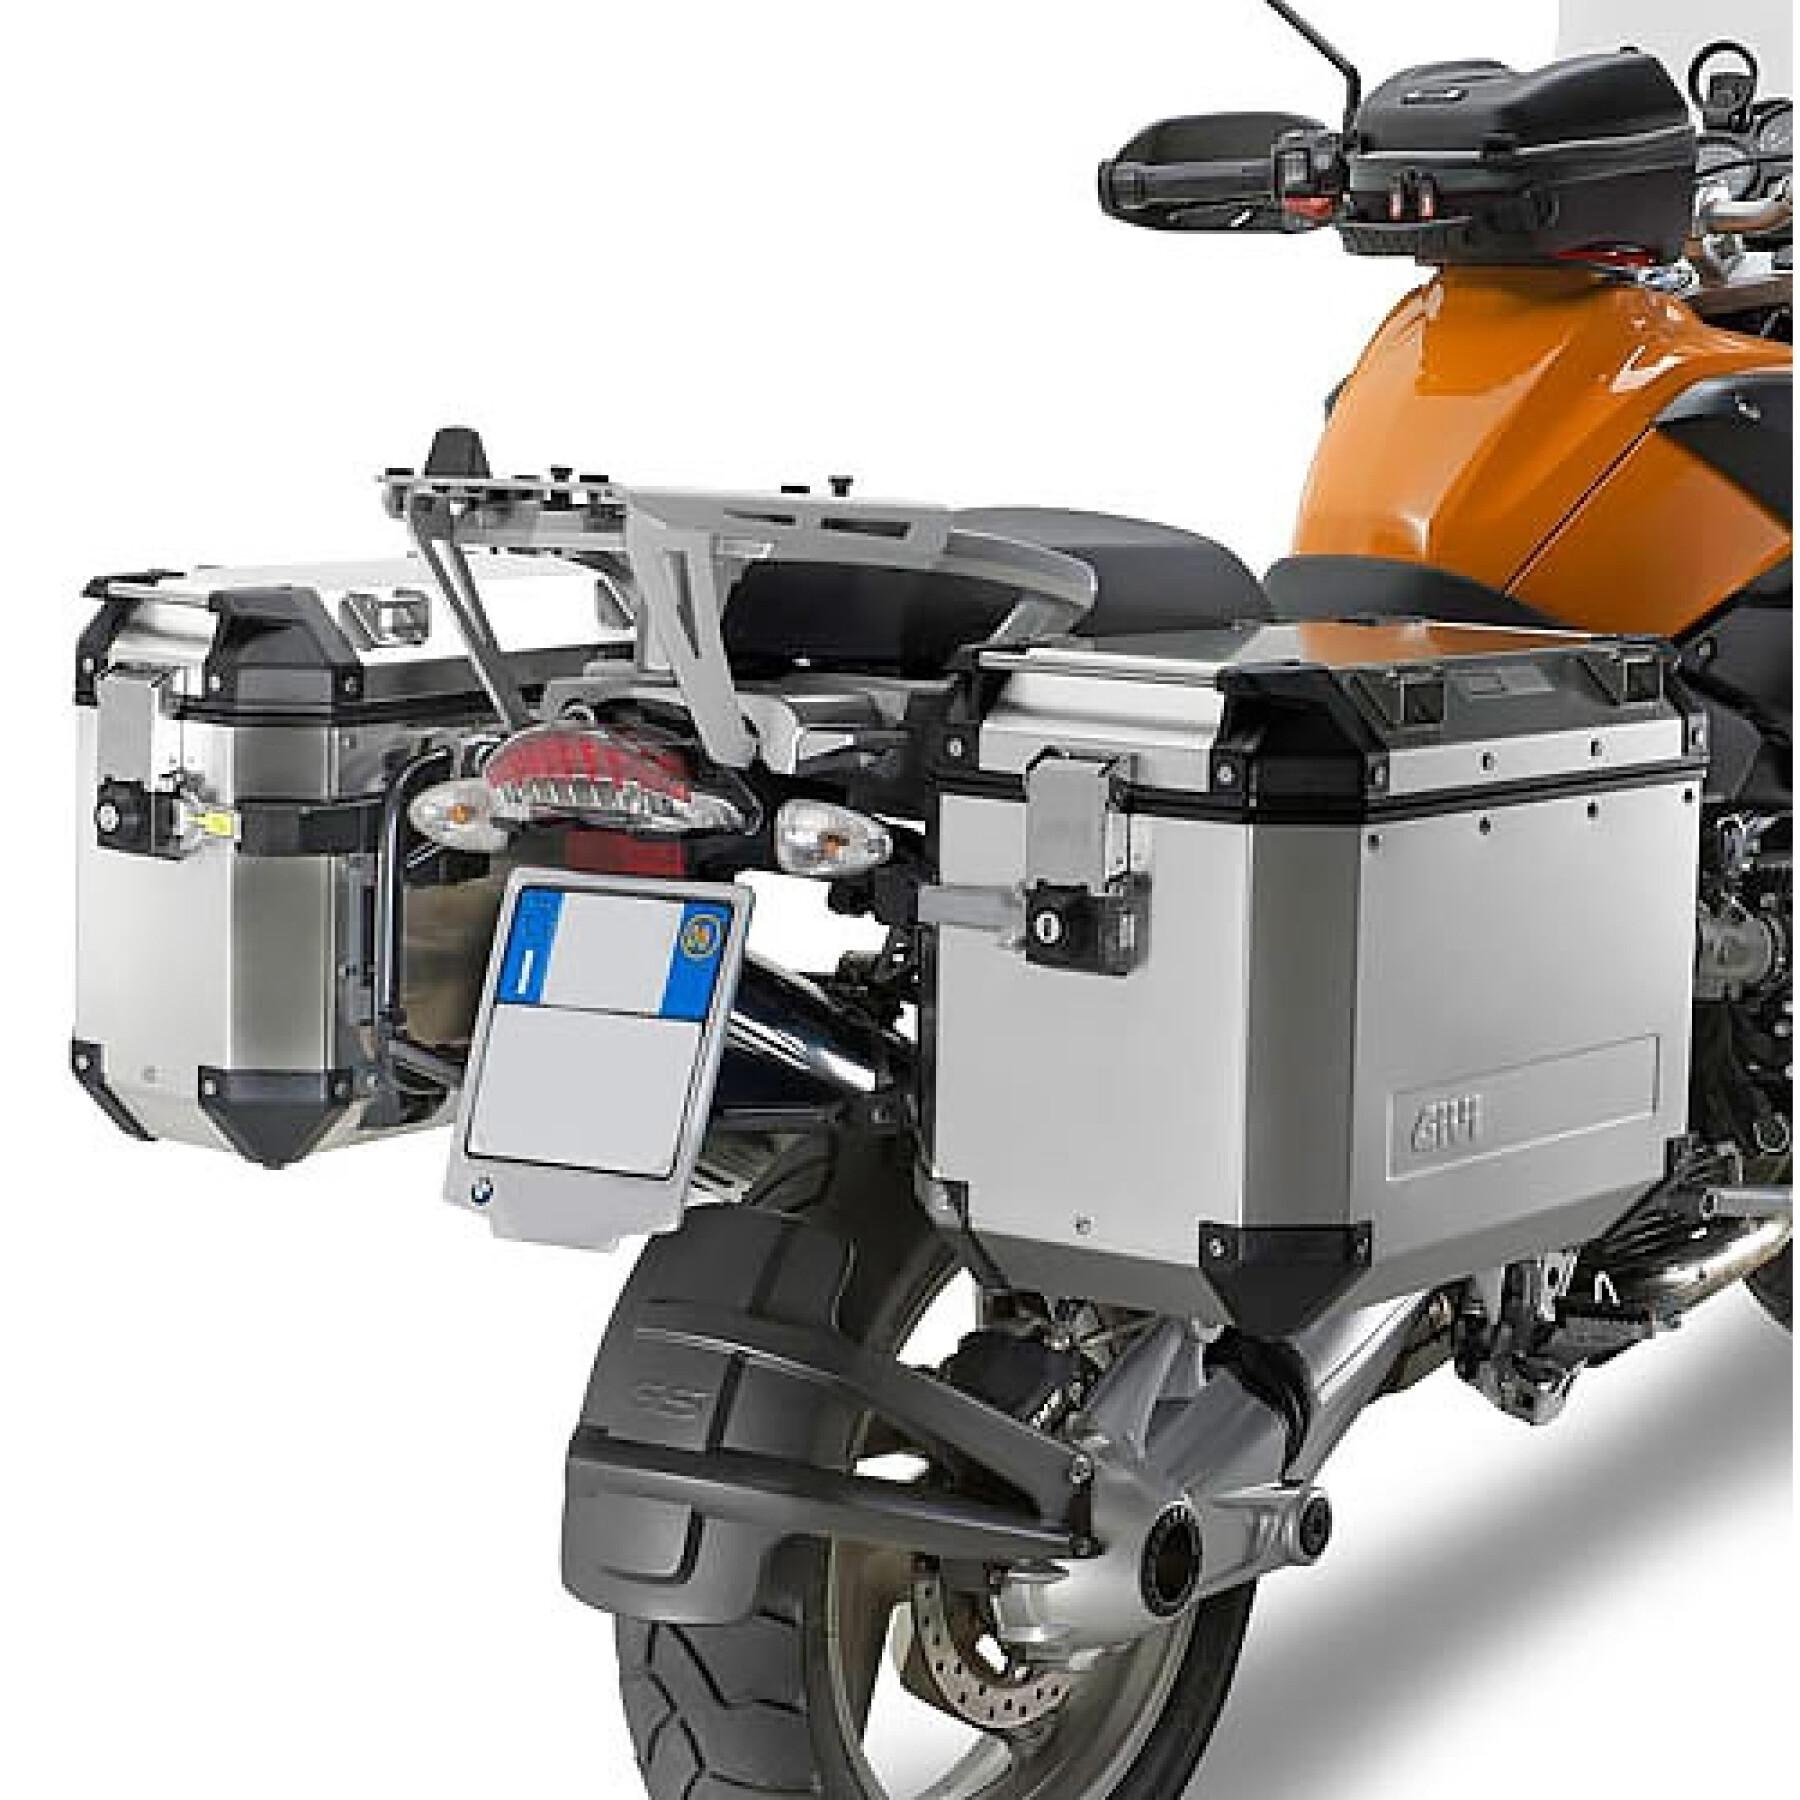 Soporte de la maleta lateral de la moto Givi Monokey Bmw R 1200 Gs (04 À 12)